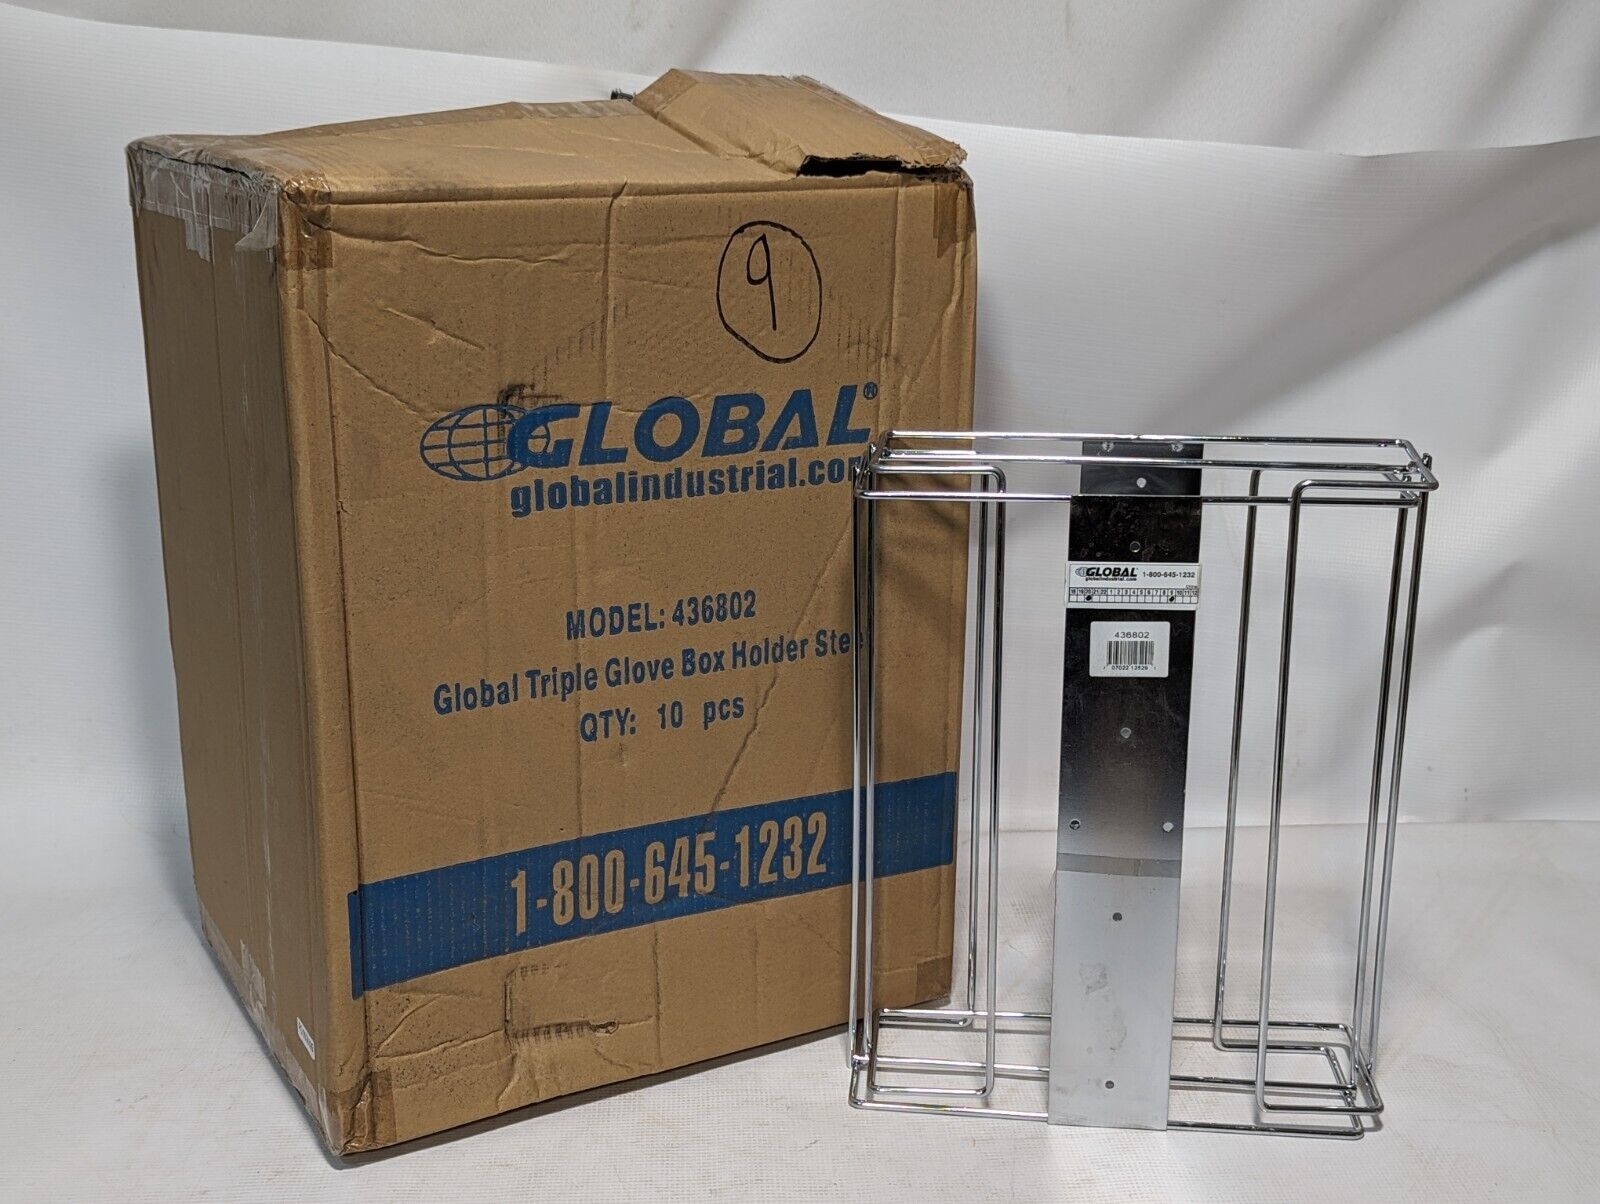 Box of 10 Global 436802 Triple Glove Box Holders